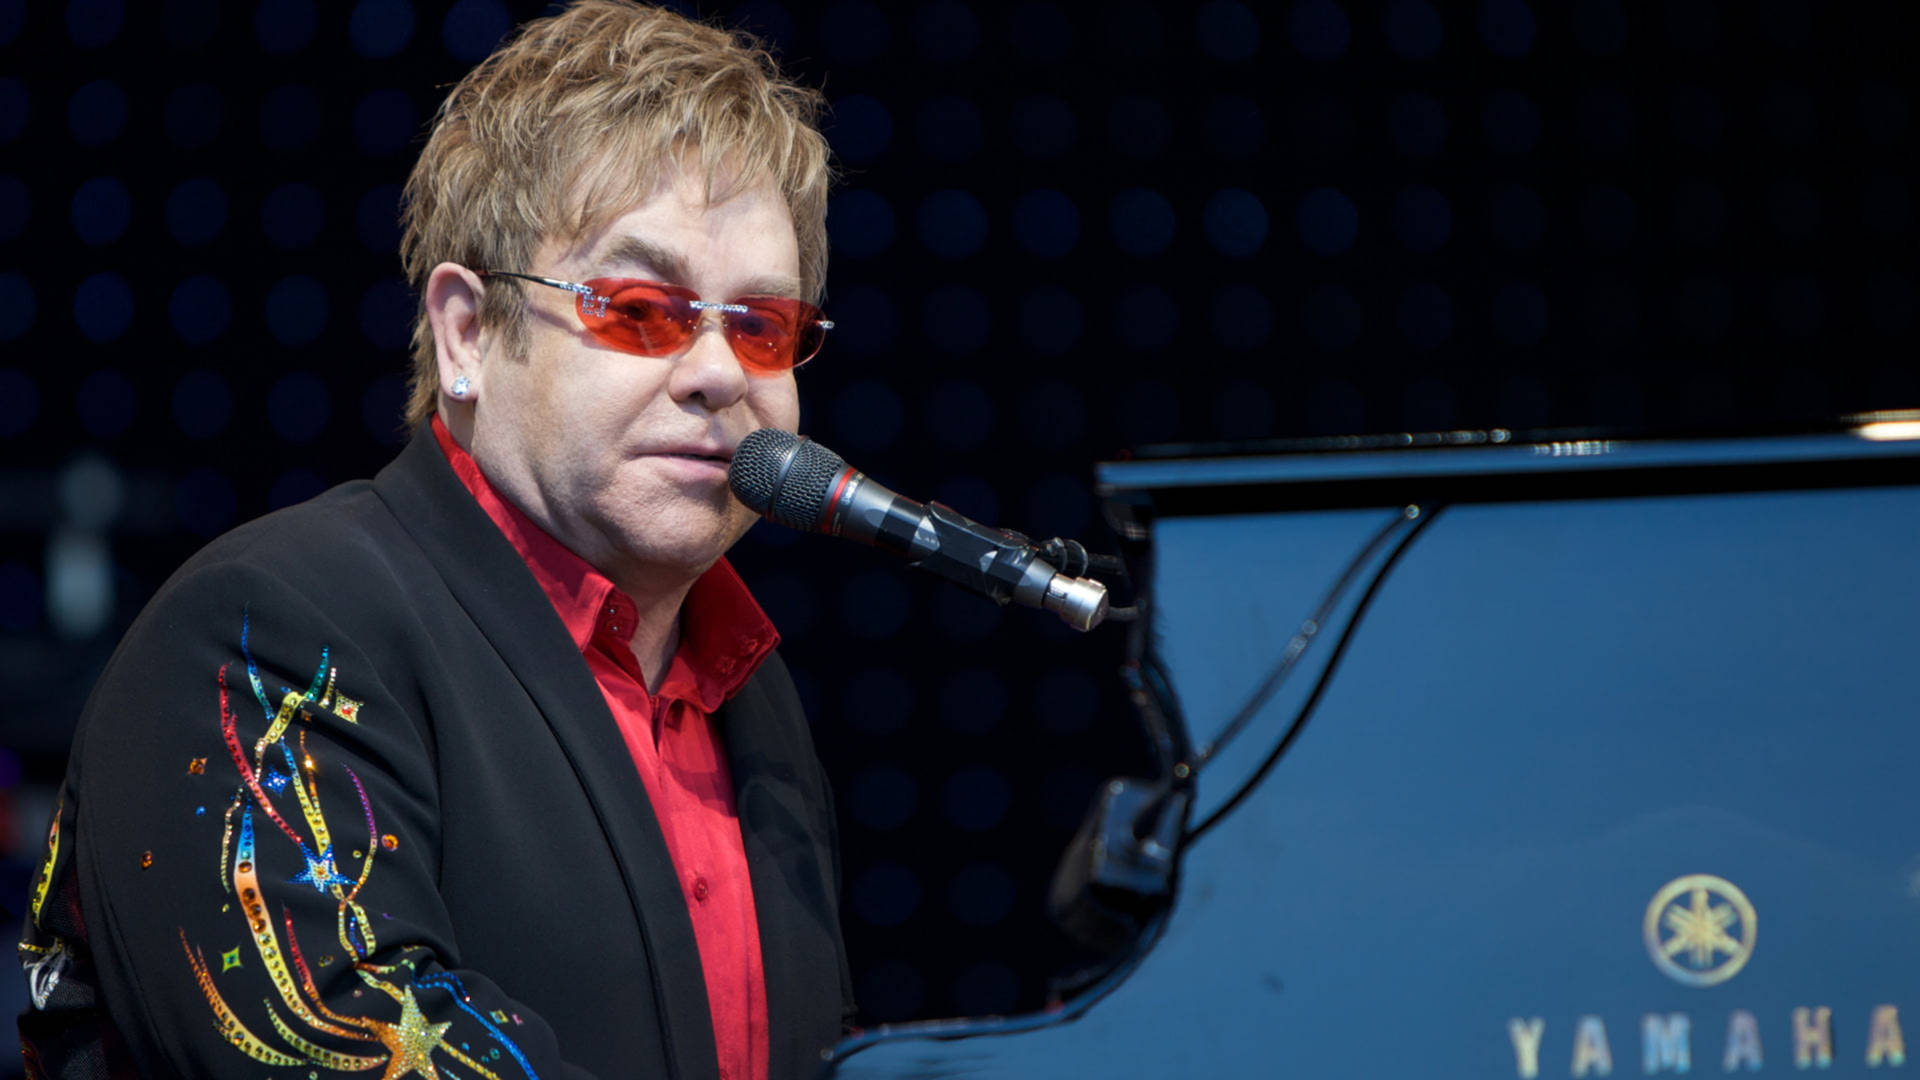 Elton John Live Performance